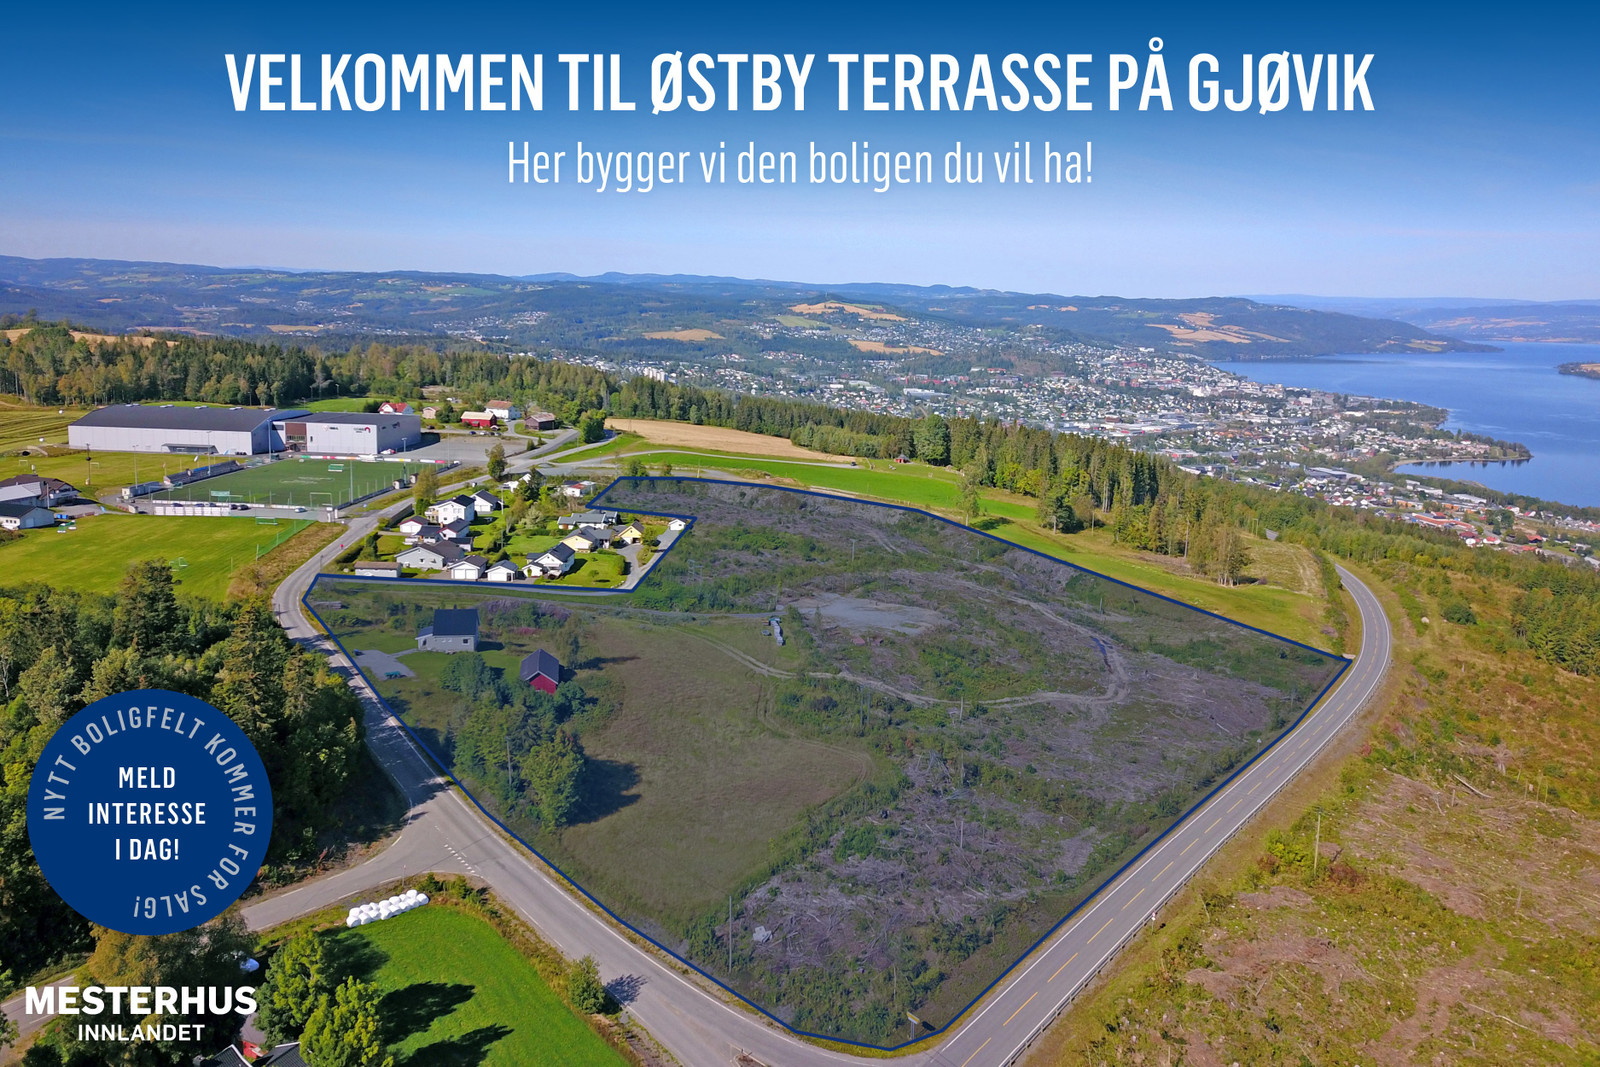 Velkommen til Østby Terrasse på Gjøviks tak!